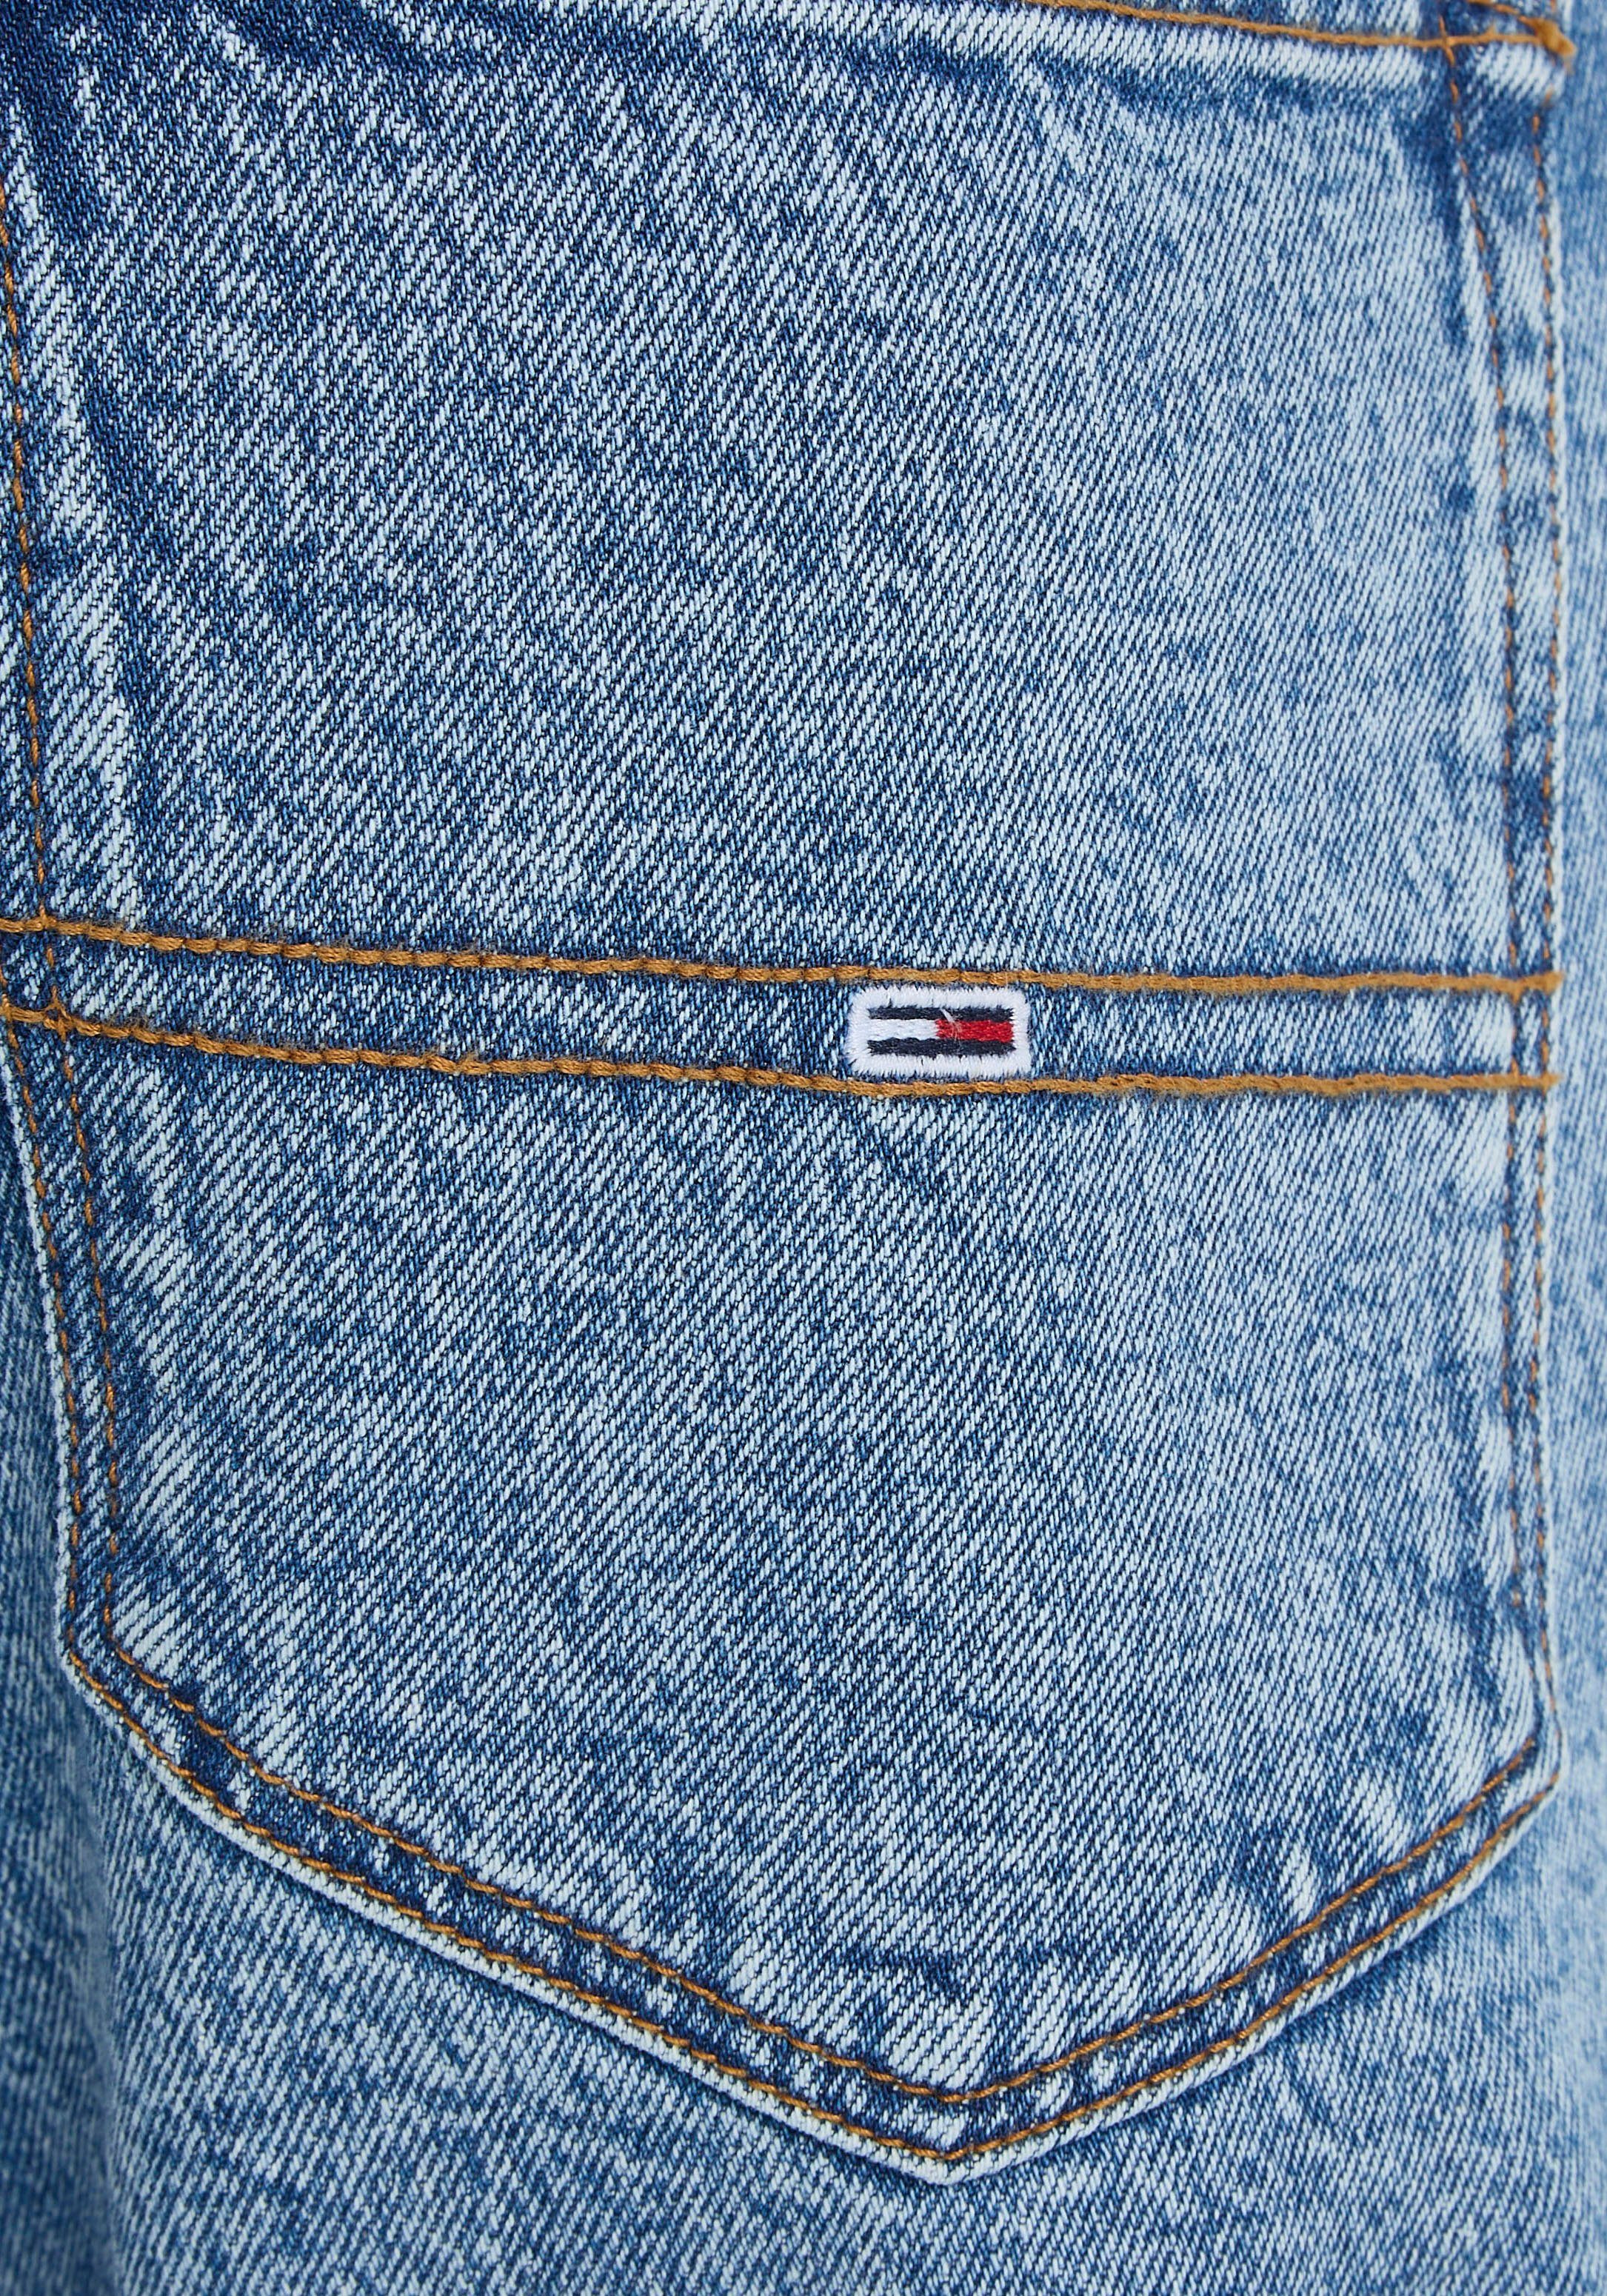 Y Tommy med. SCANTON 5-Pocket-Jeans Denim Jeans SLIM